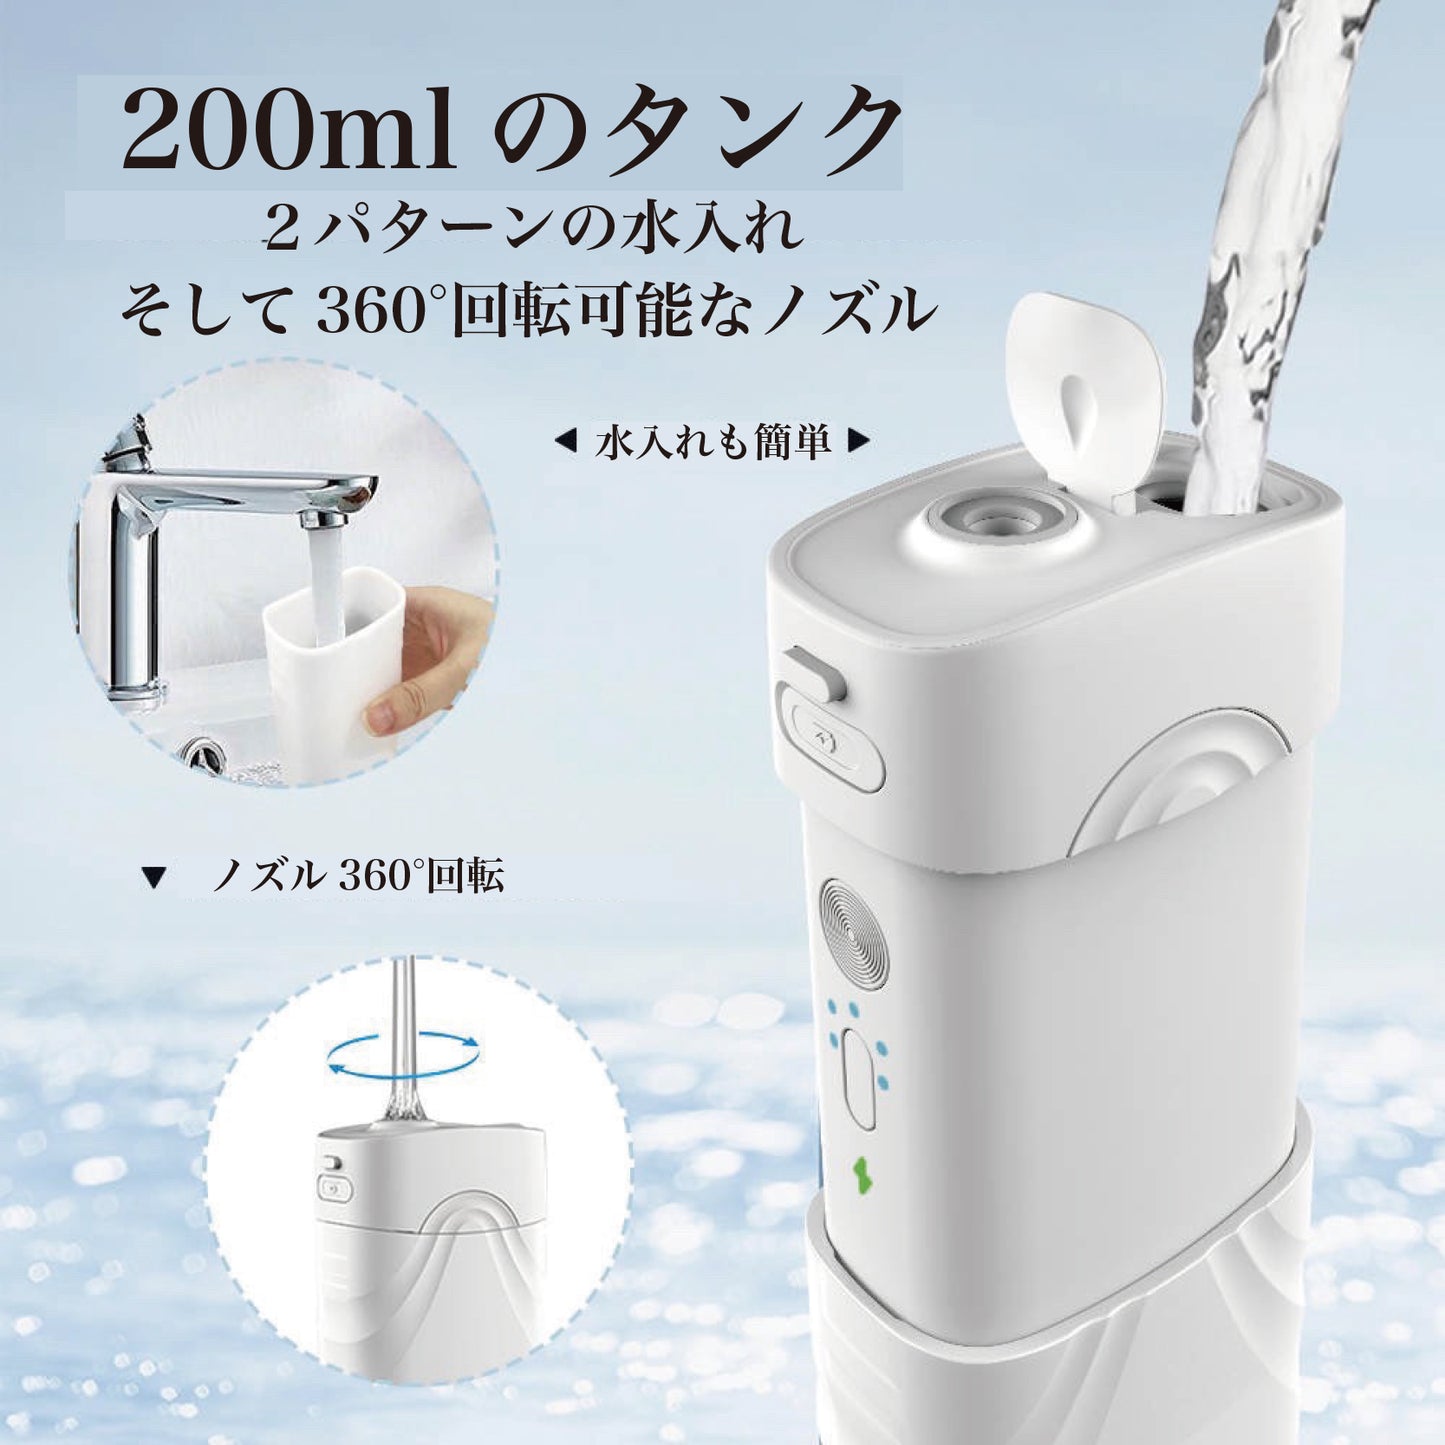 【新型】口腔洗浄器 ジェットウォッシャー ウォーターフロス マウスウォッシャー 歯間ケア  200ml